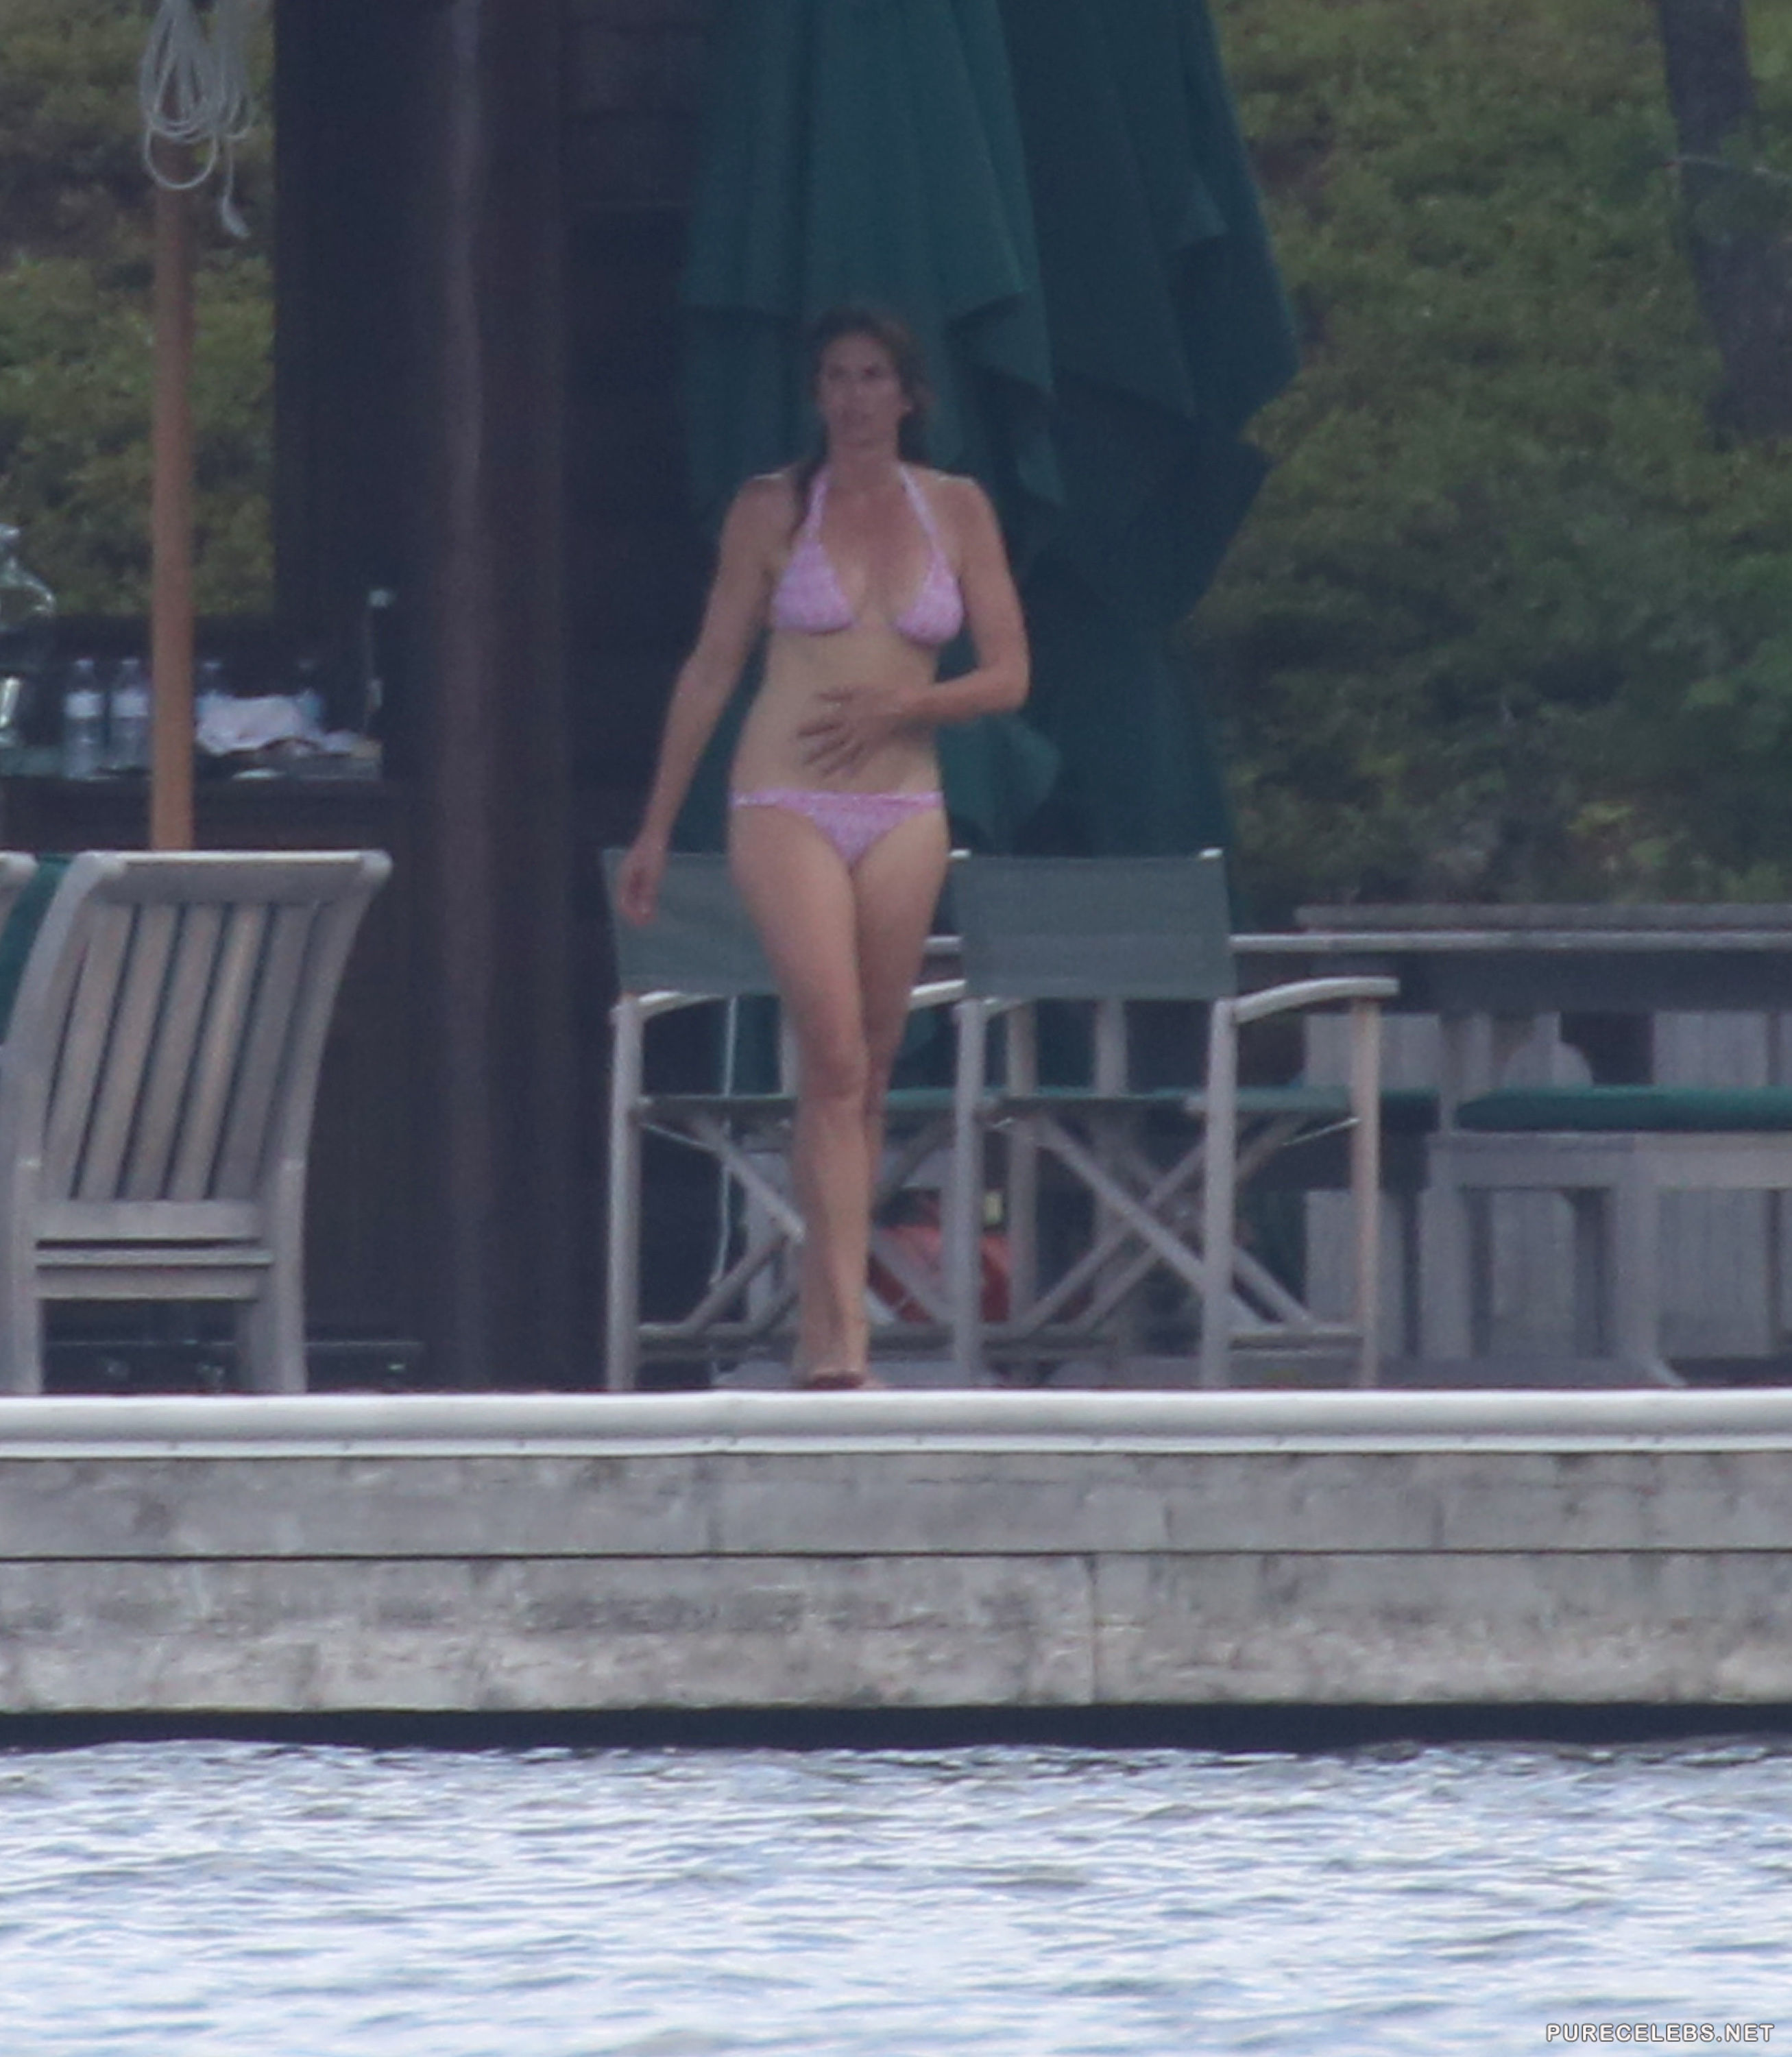 Leaked cindy crawford caught wearing purple bikini